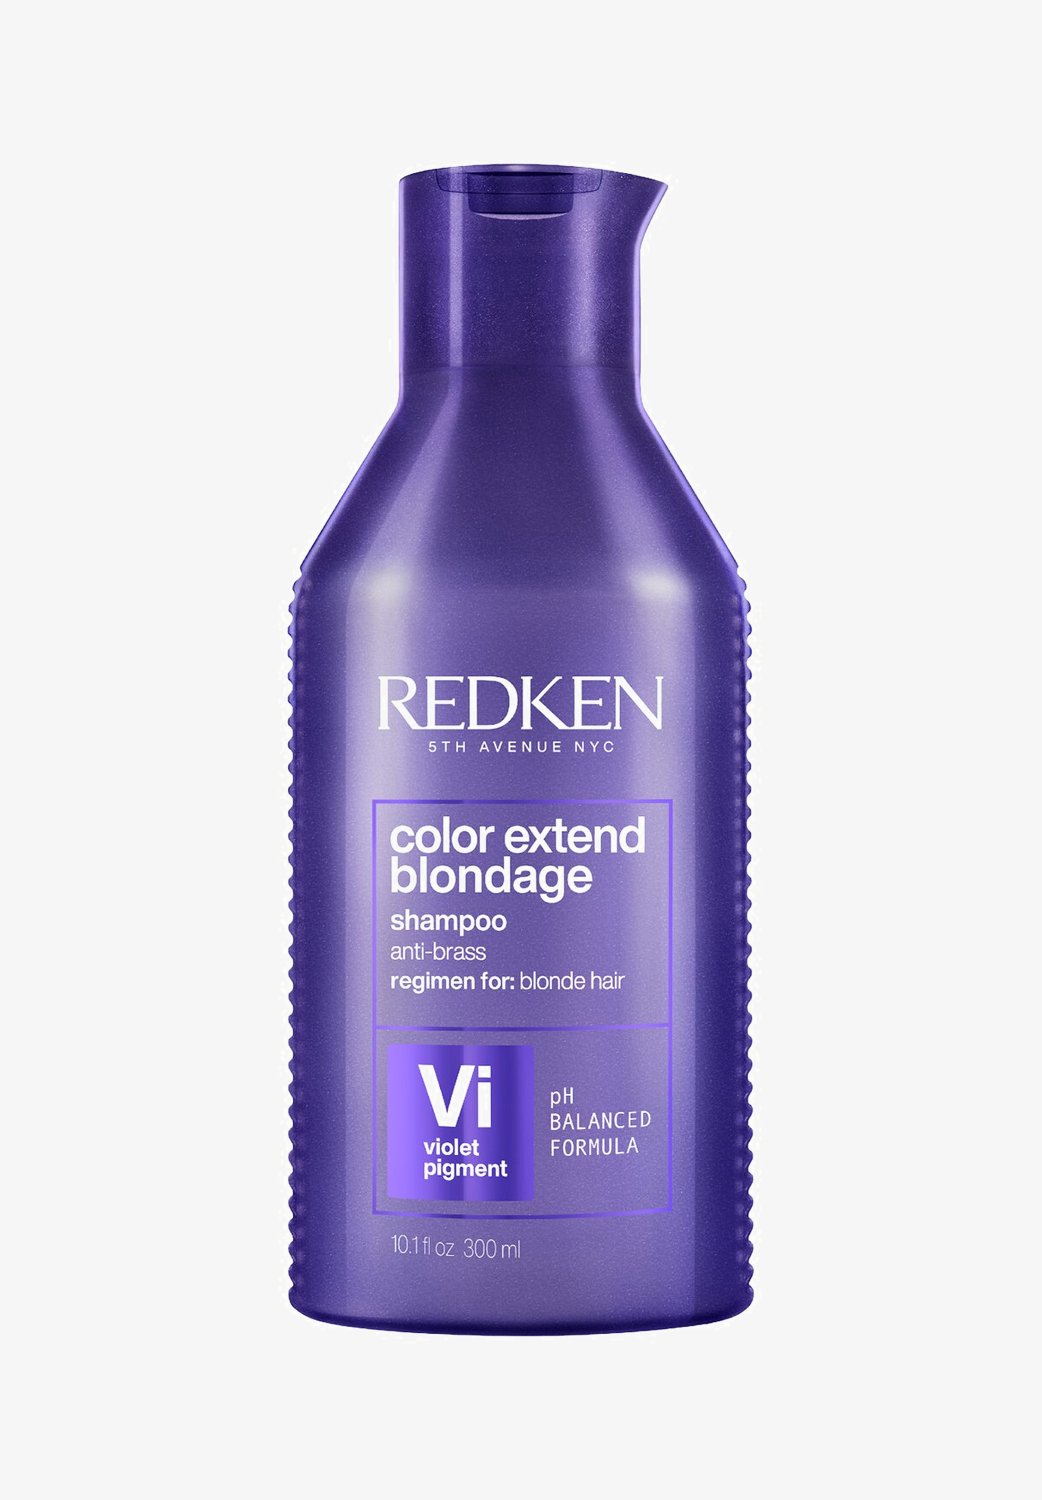 redken szampon color extend blondage shampoo